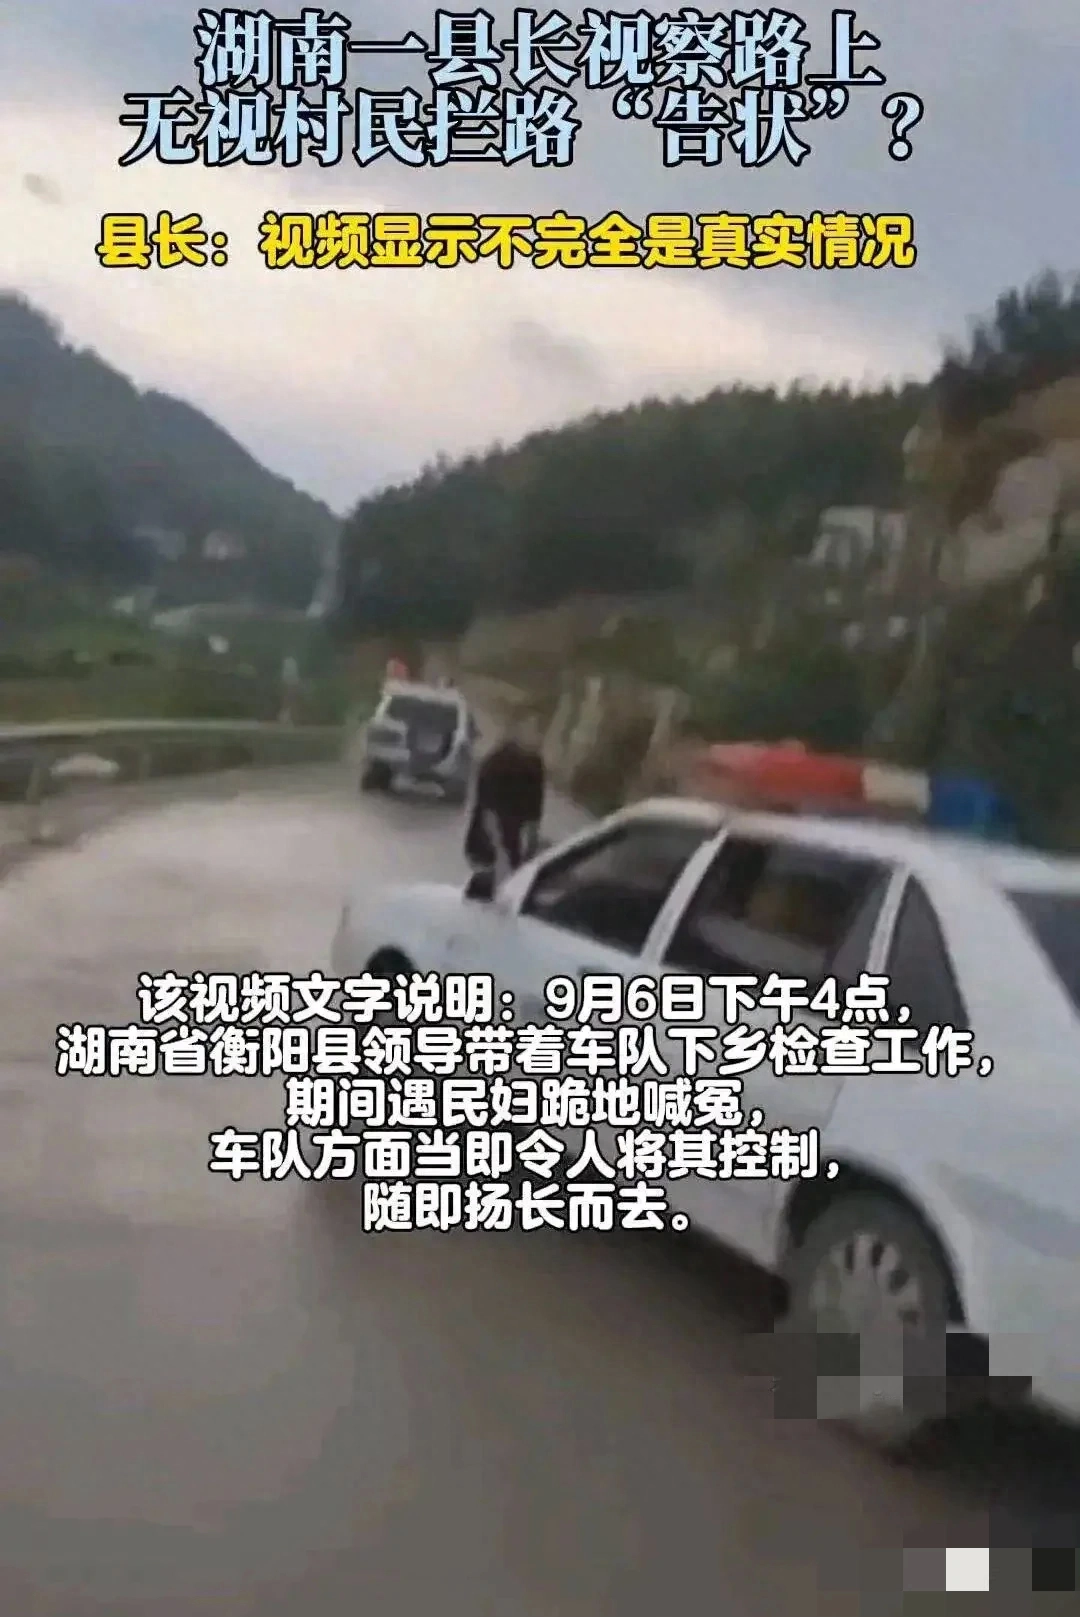 "无视"还是"忽略"？湖南县长对村民拦路事件的回应引发争议